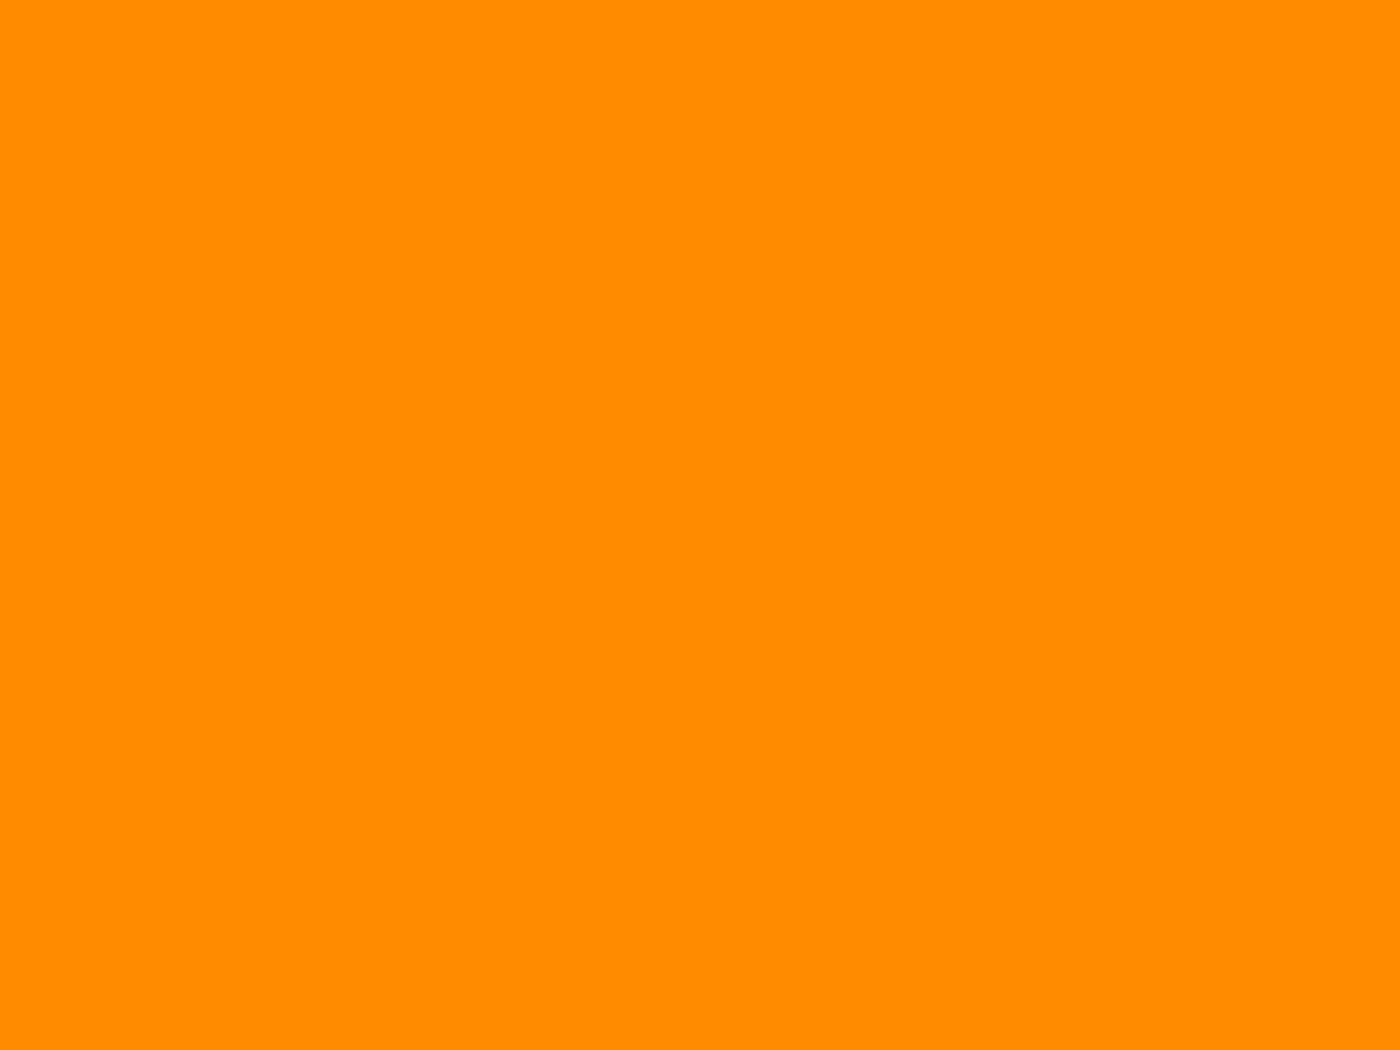 Tải miễn phí Background orange polos hd với độ phân giải cao